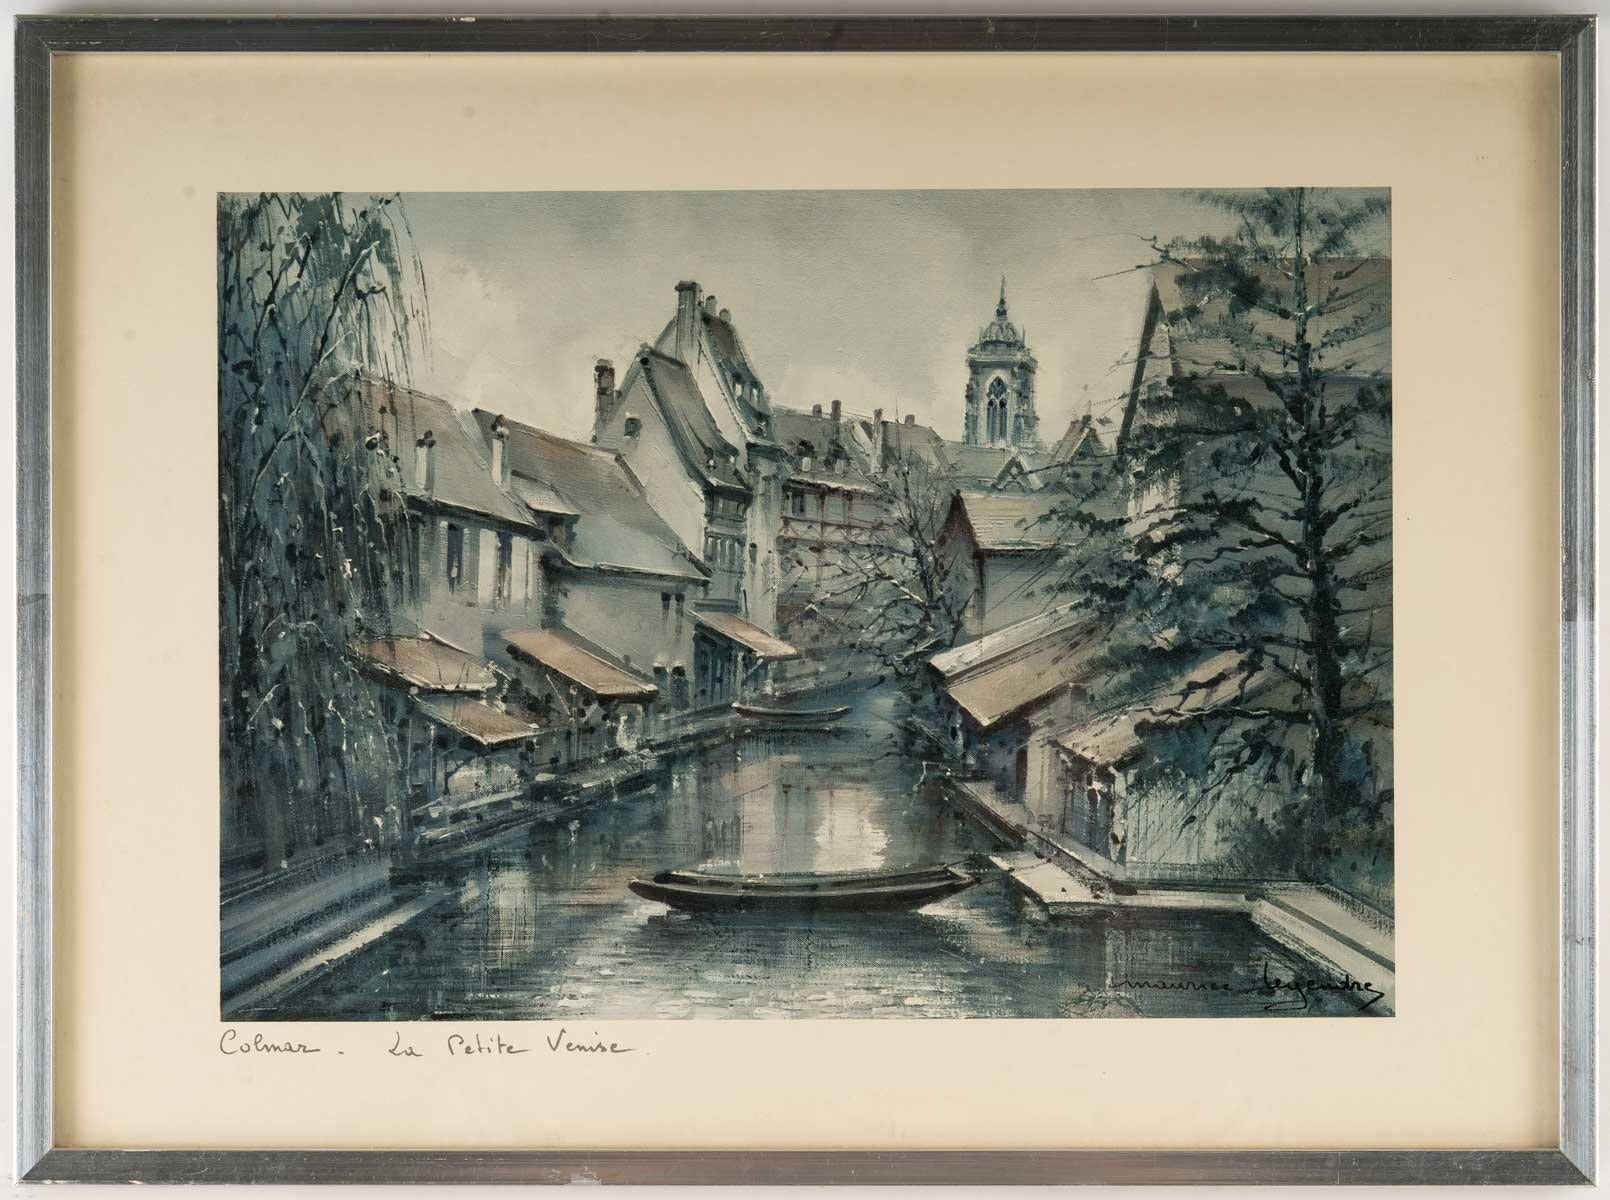 Suite of 3 framed reproductions, 20th century.
Measures: H: 30 cm, W: 40 cm, D: 1.5 cm.